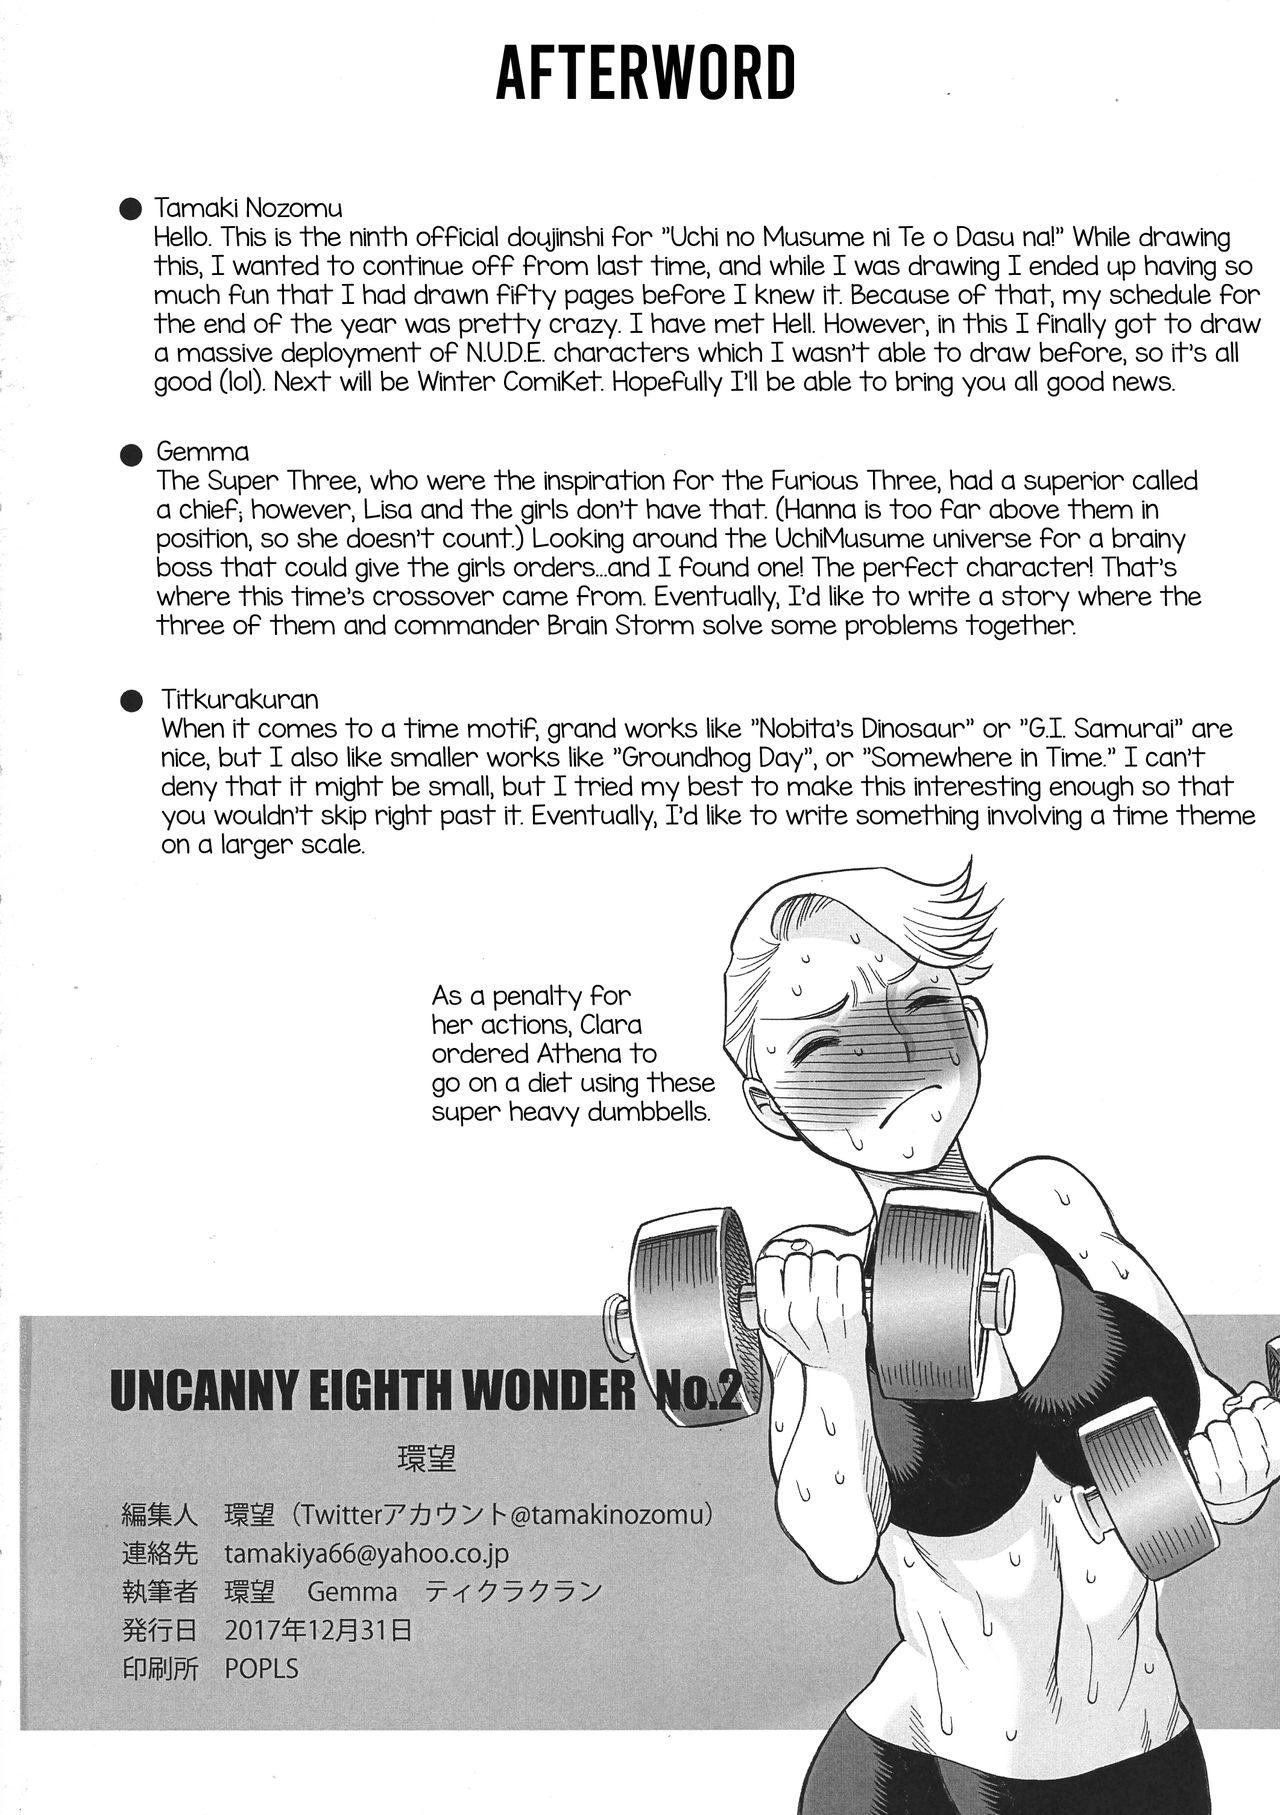 Seduction Uncanny EIGHTHWONDER No.2 - Uchi no musume ni te o dasuna Assfuck - Page 55